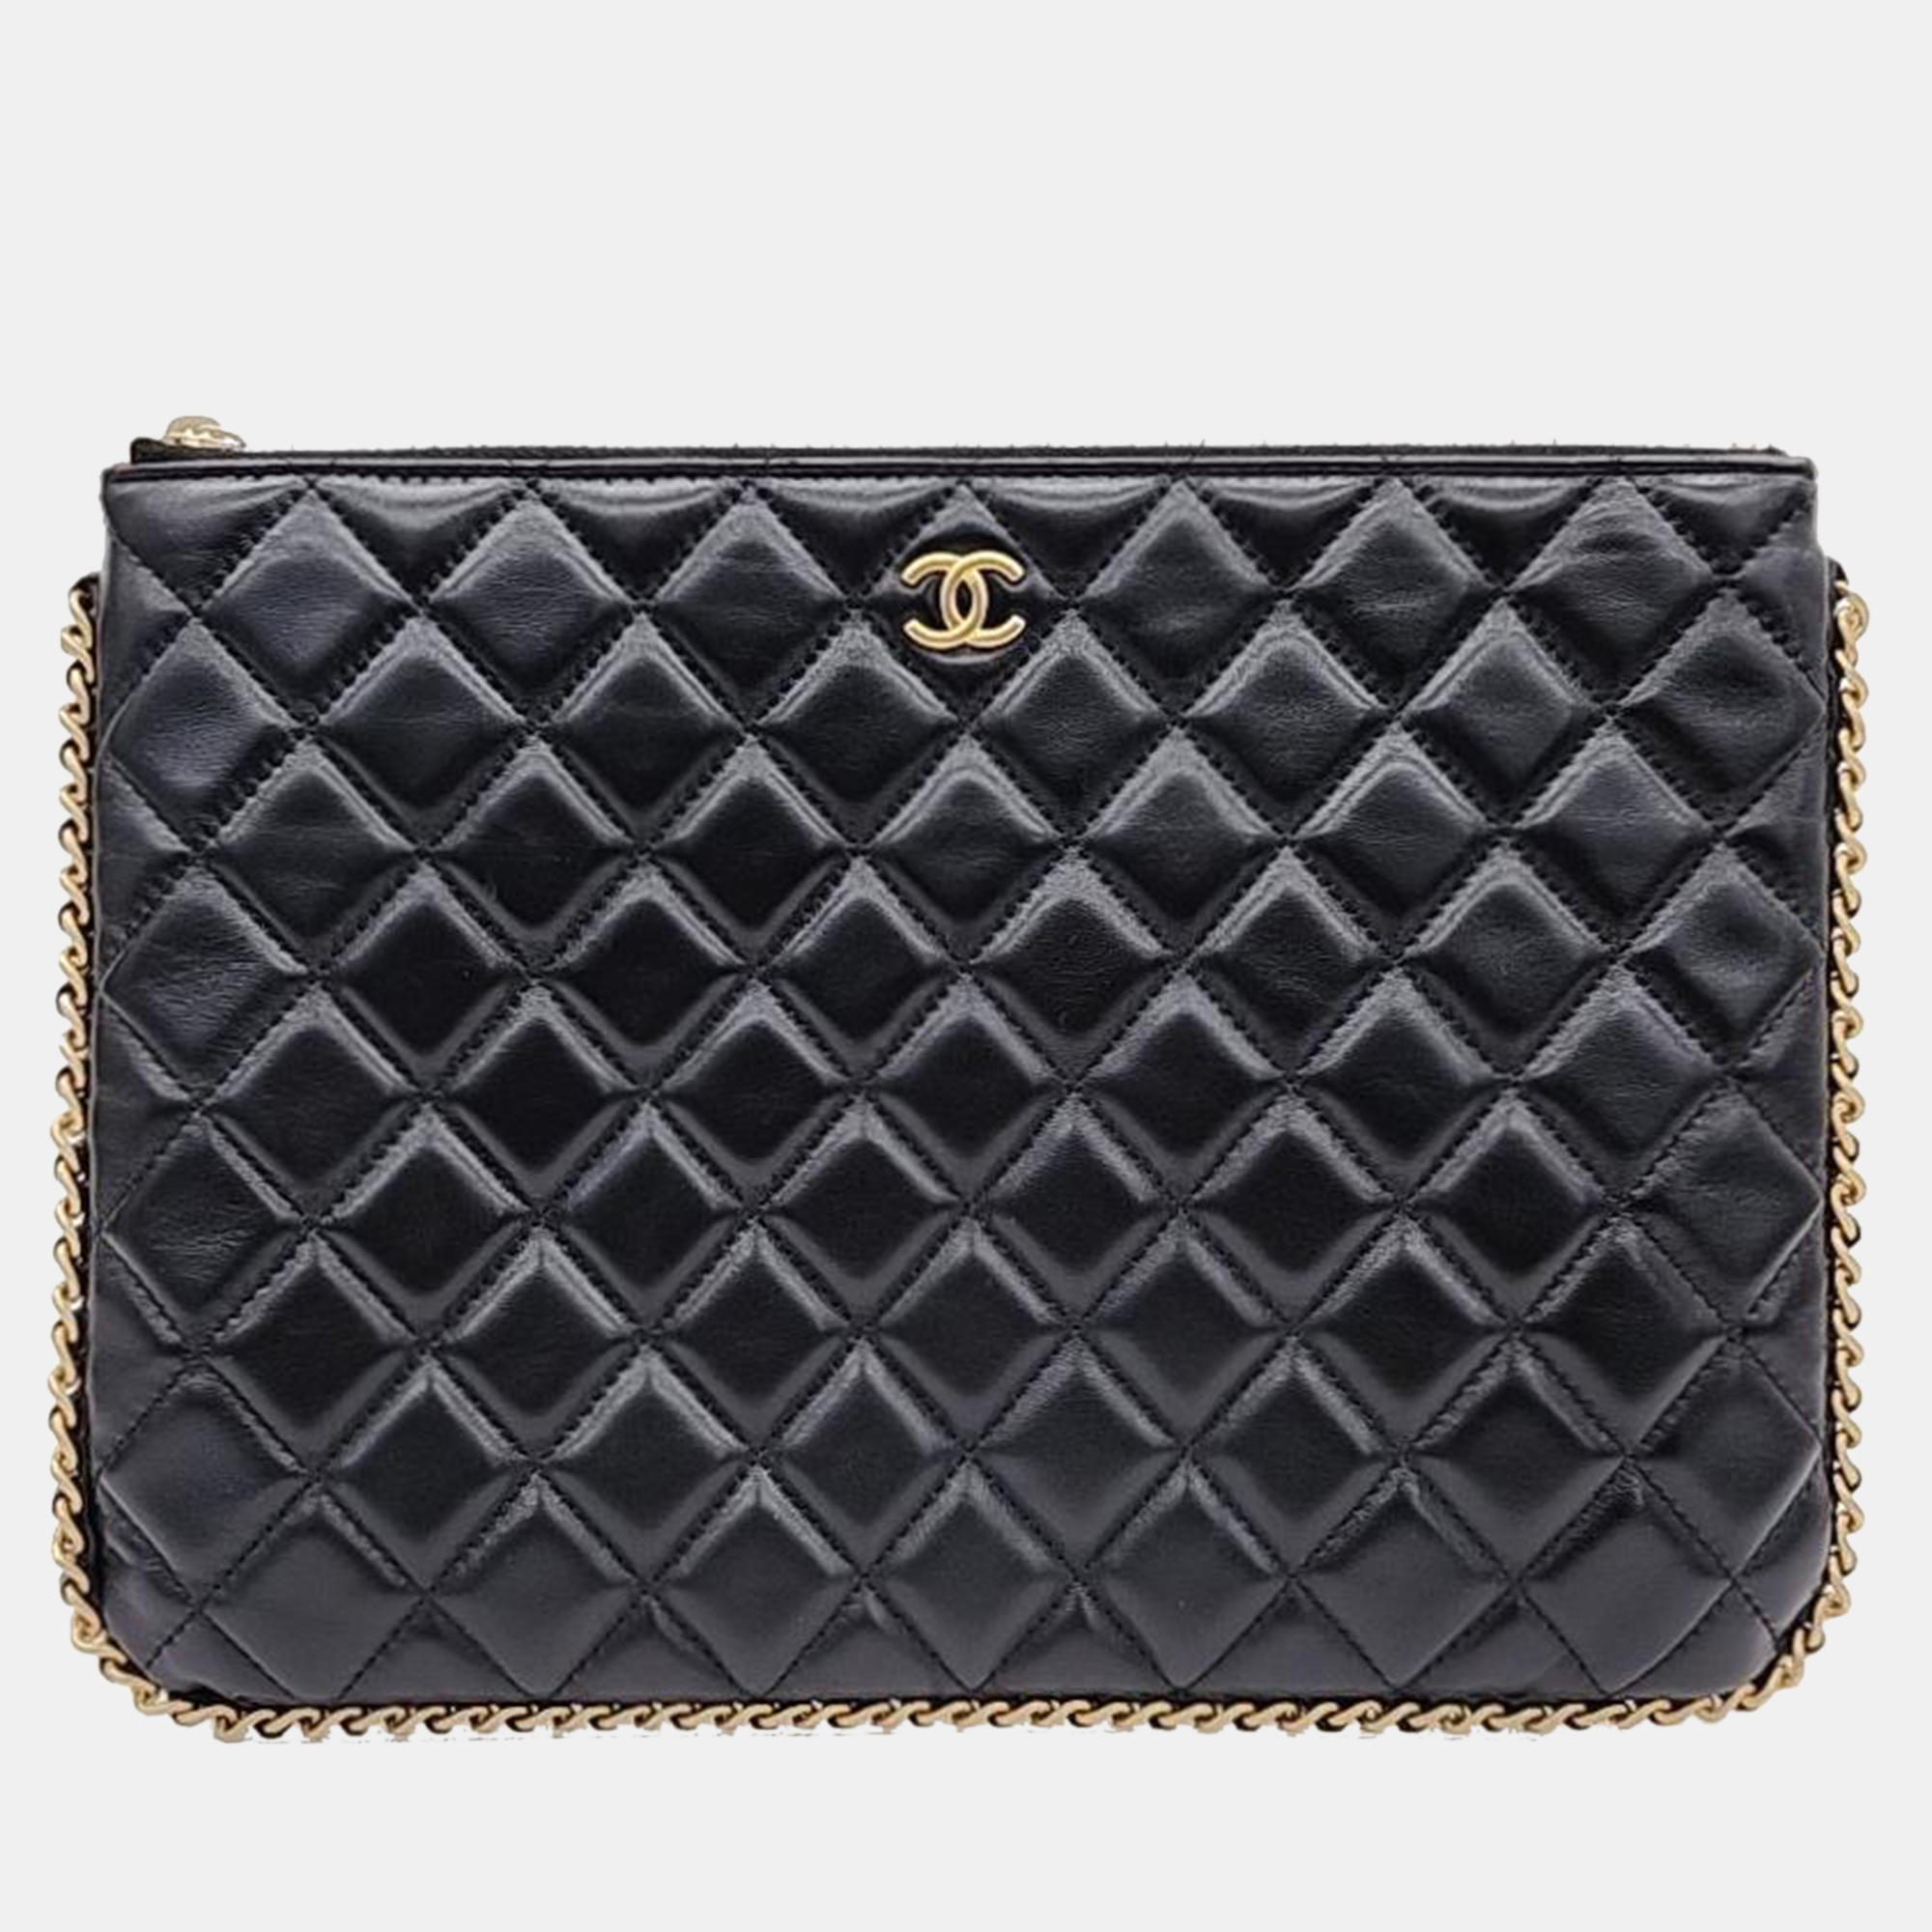 Chanel black caviar leather medium clutch bag